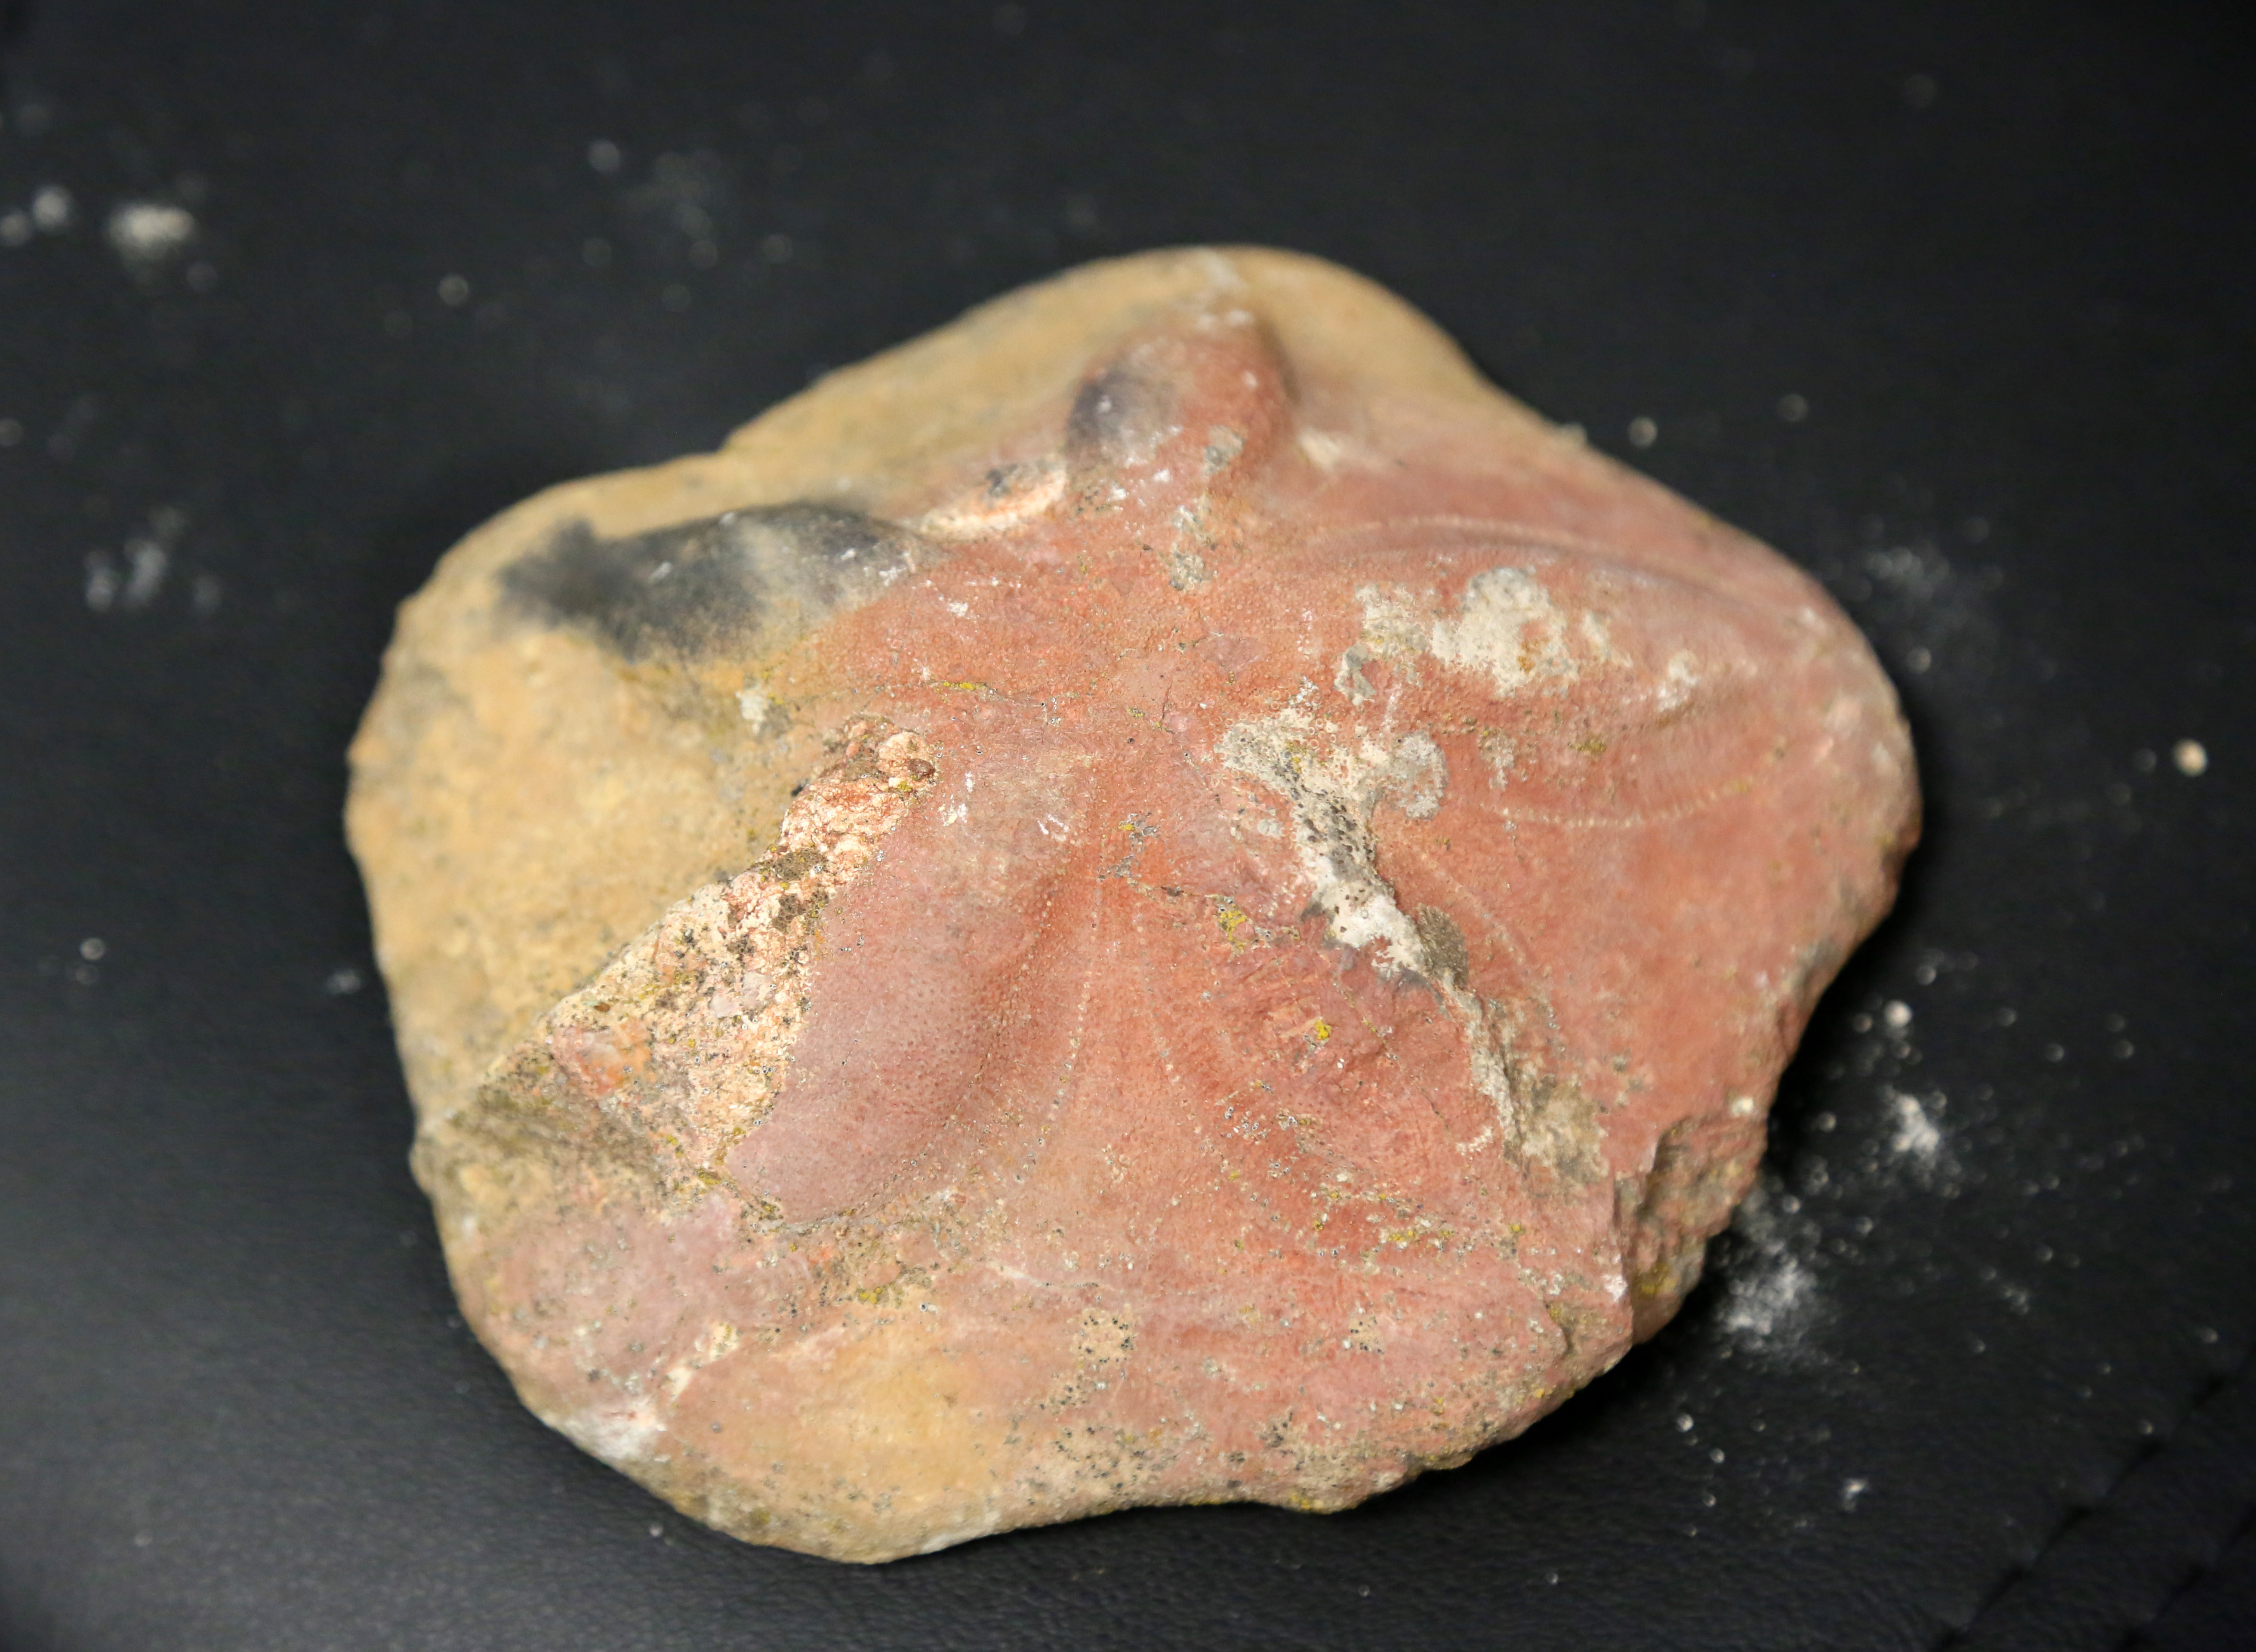 orta-toroslarda-23-milyon-yillik-deniz-canlilarina-ait-fosiller-bulundu-1176-dhaphoto3.jpg